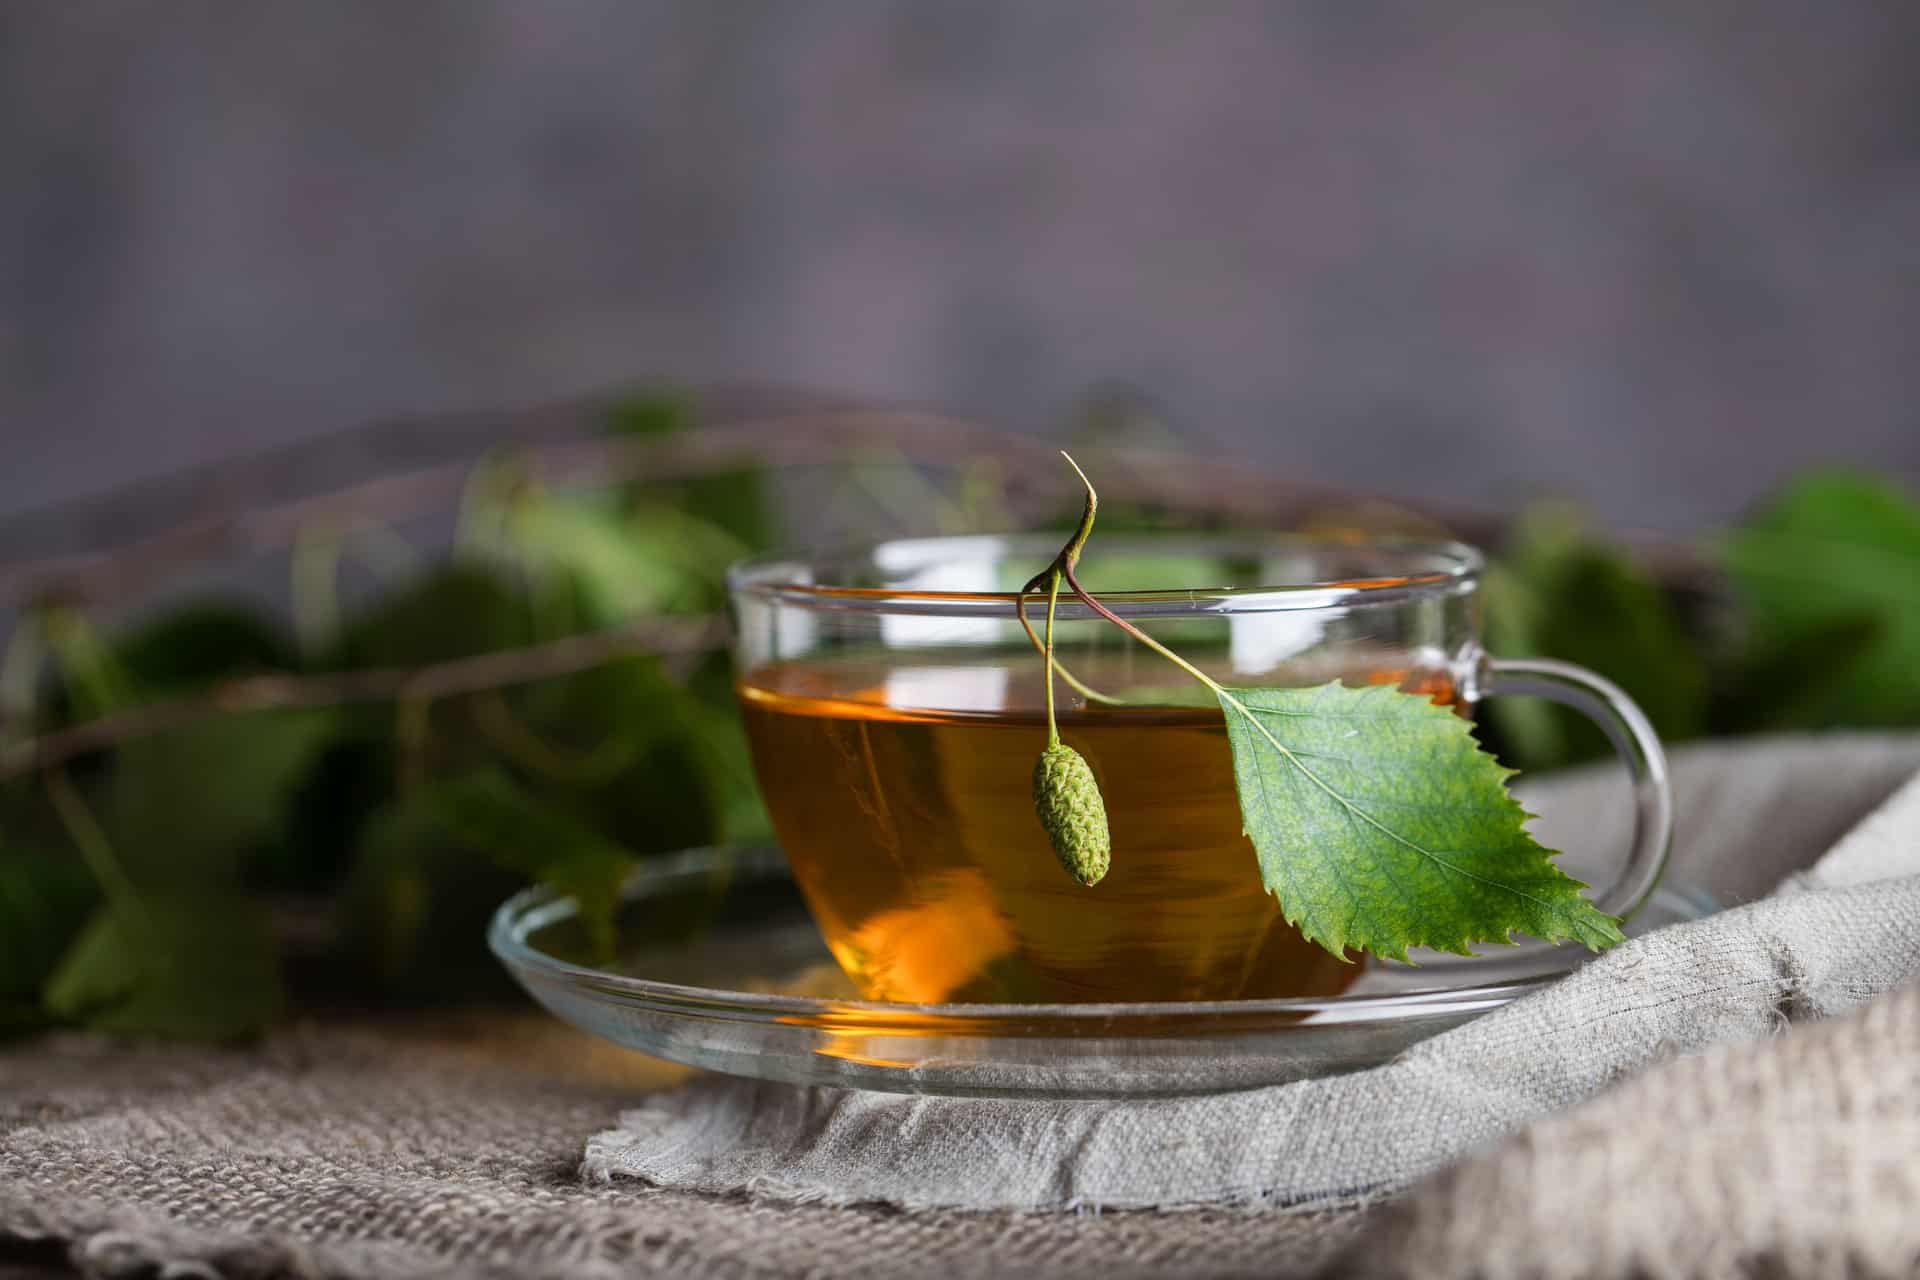 Na tym obrazku możemy zobaczyć filiżankę pełną aromatycznej herbaty z pokrzywy, która zaskakuje swoim wyjątkowym smakiem i działaniem. Jej intensywny zielony kolor oraz delikatny zapach świadczą o naturalności tego napoju. Ta pokrzywowa herbata nie tylko cieszy podniebienie, ale także posiada liczne właściwości zdrowotne, które wspierają nasze dobre samopoczucie i naturalną równowagę organizmu